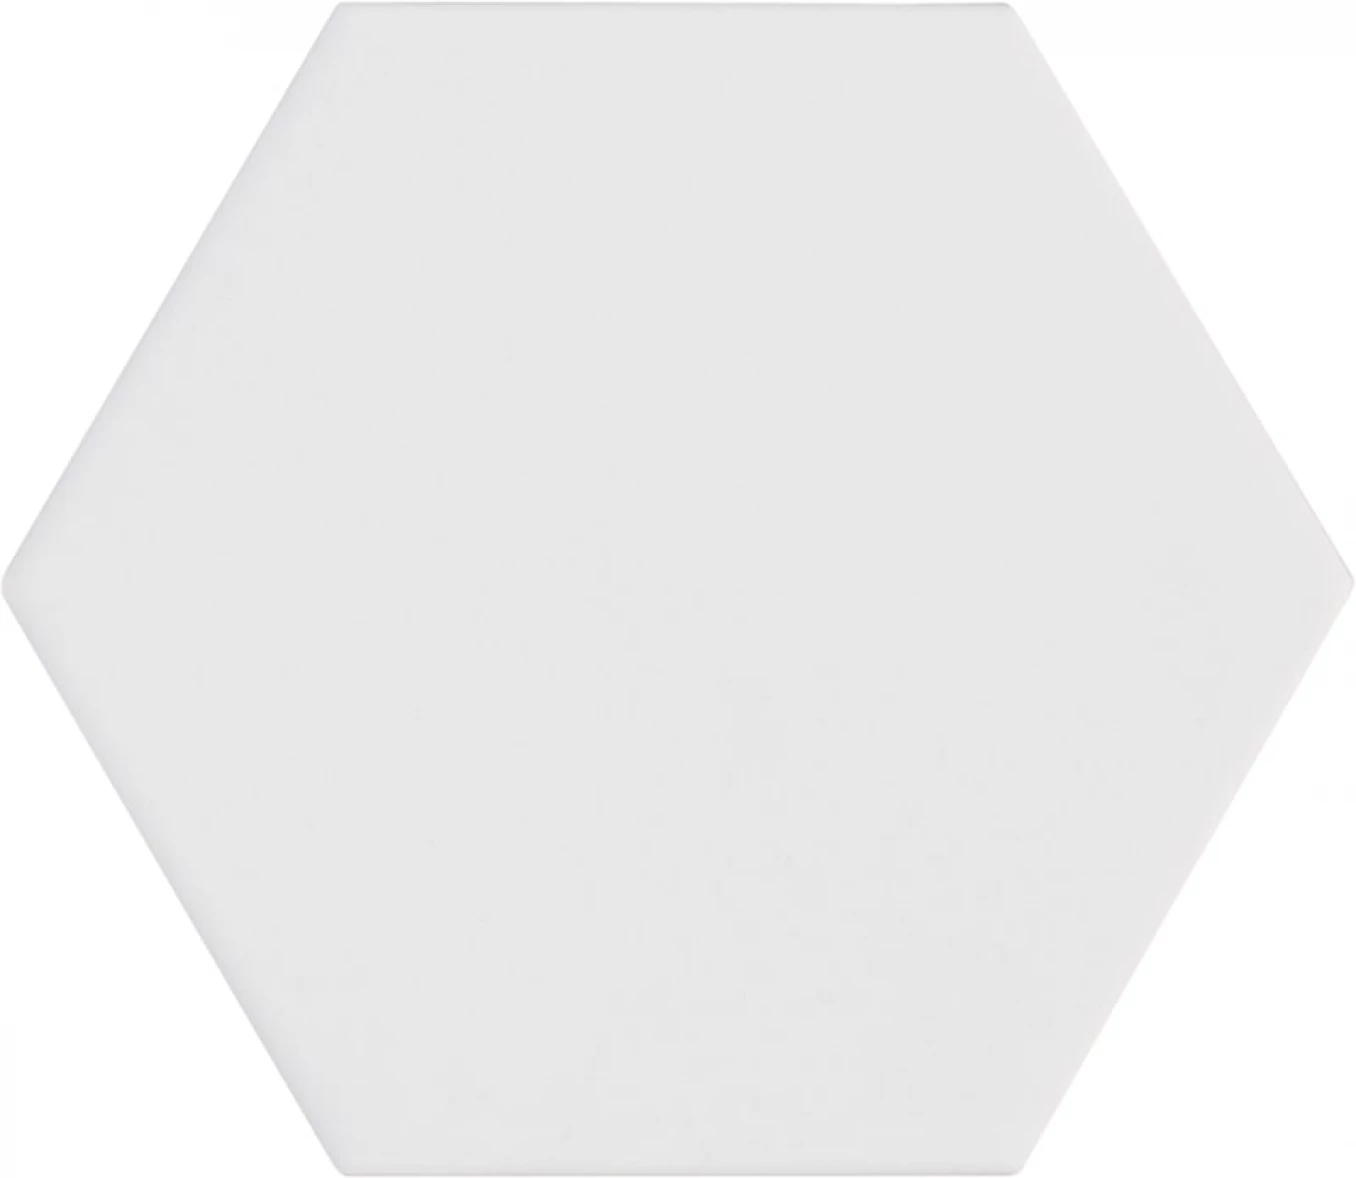 KROMATIKA white hex 10.1x11.6